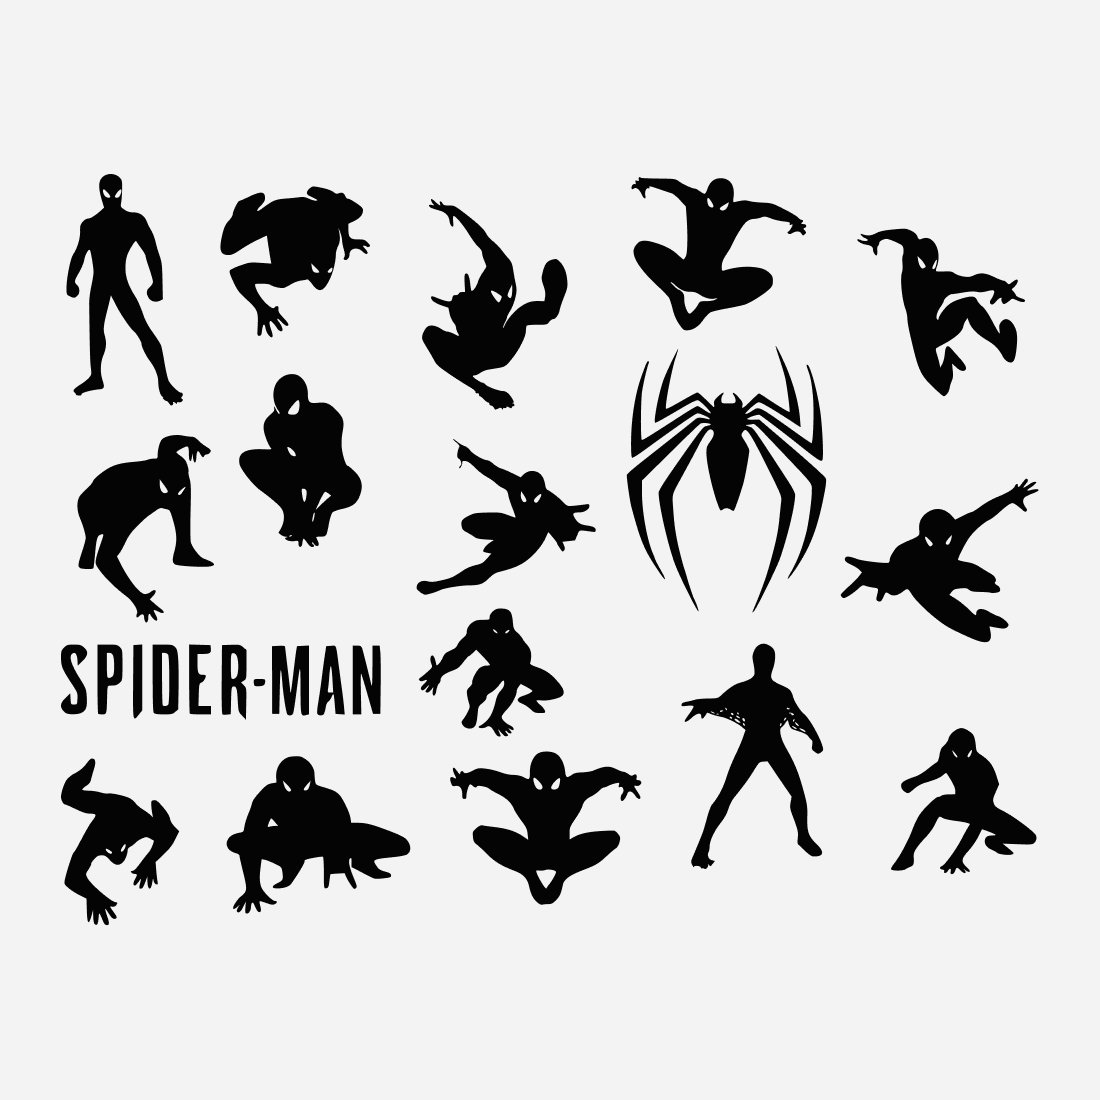 Spiderman v2 SVG bundle.